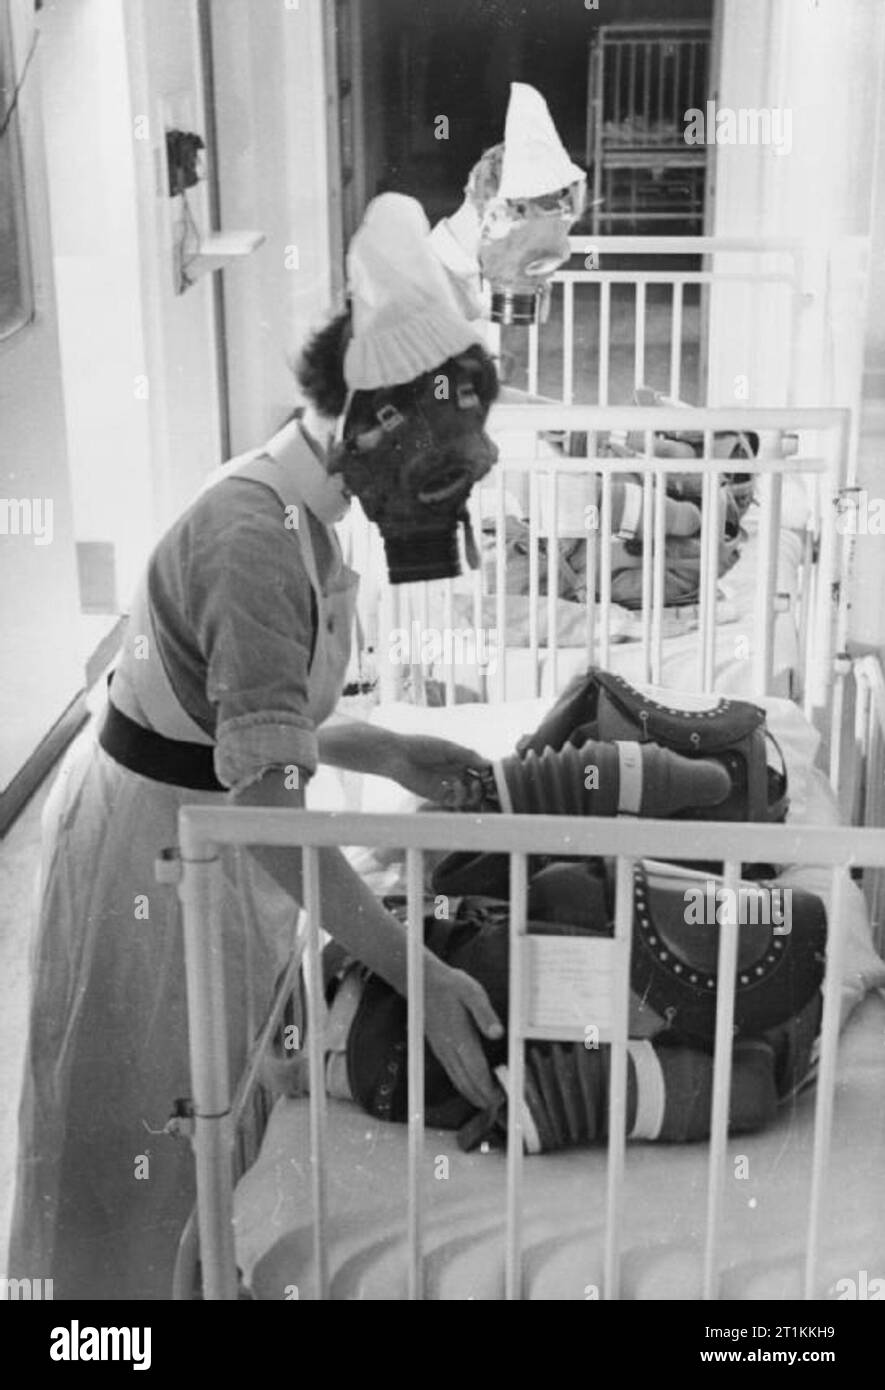 Gas Bohren in einem Londoner Krankenhaus - Gasmasken für Babys getestet, England, 1940 Zwei Krankenschwestern jede Pumpe der Balg eines Babys gas Atemschutzmaske, um das Kind zu versorgen das Tragen der Maske mit Luft, während ein Gas bohren in einem Londoner Krankenhaus, 1940. Stockfoto